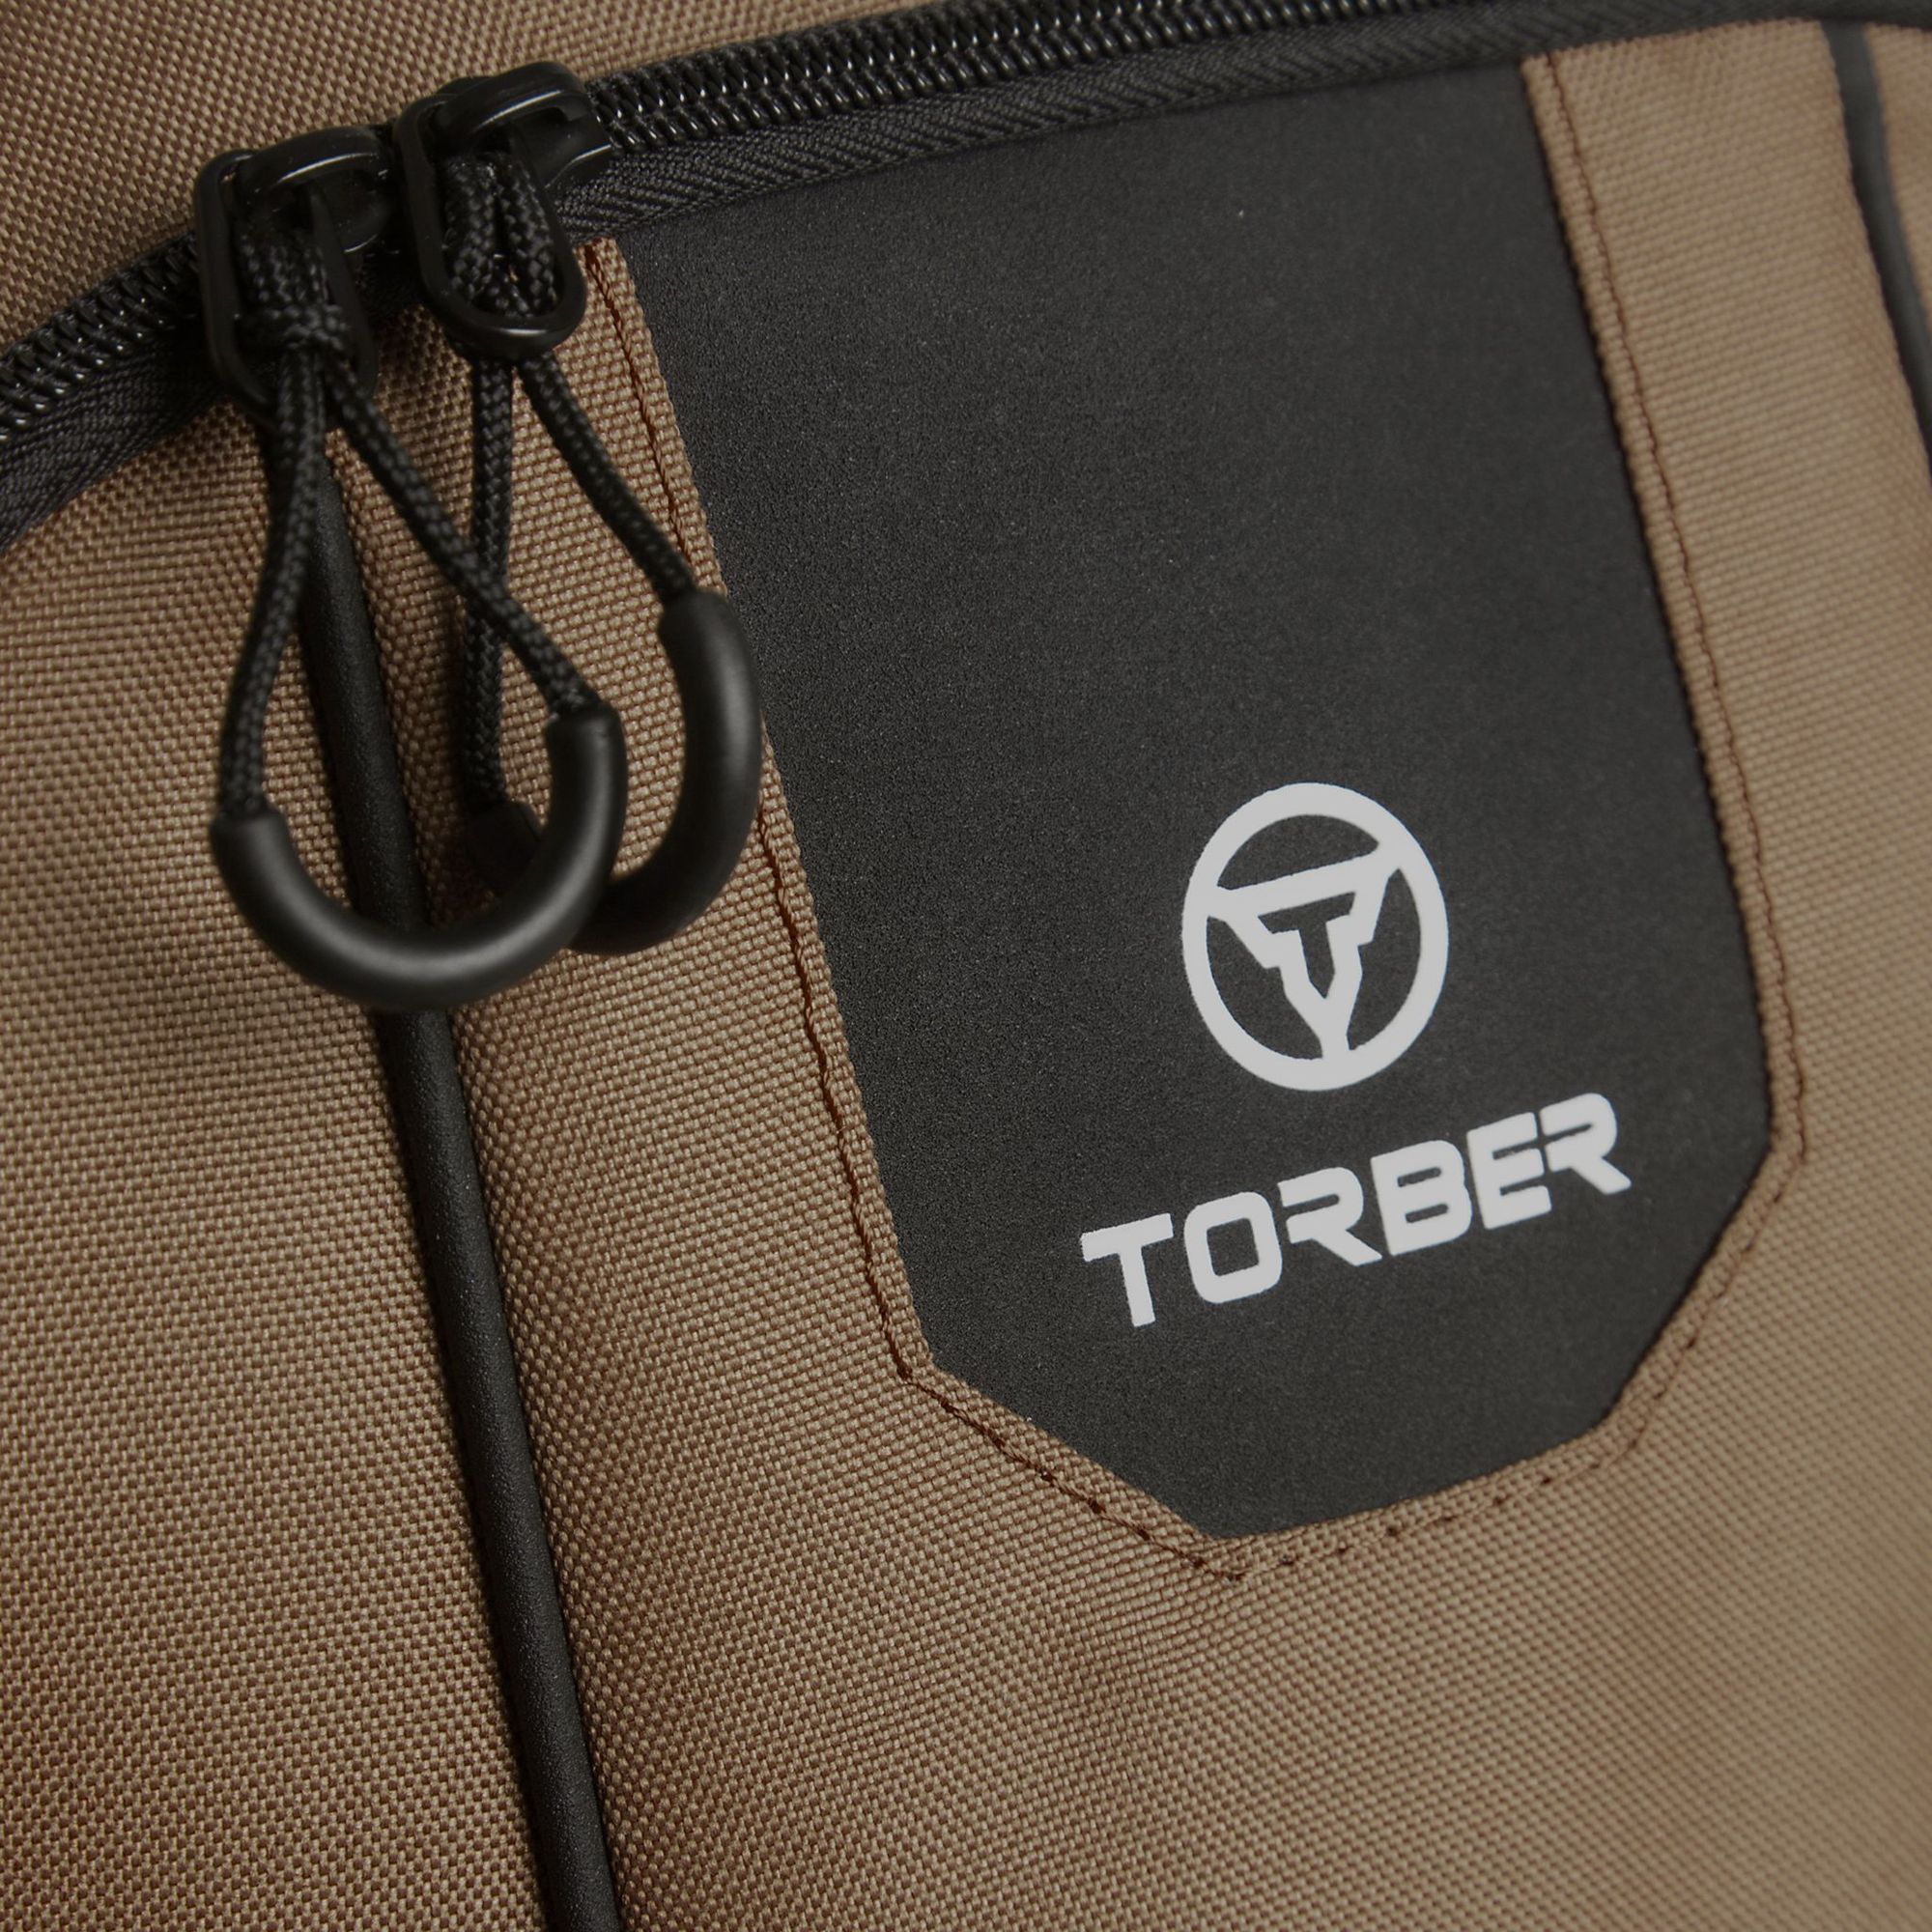 Рюкзак Torber Rockit 15,6 T8283-BRW с отделением для ноутбука, коричневый городской рюкзак torber rockit 19 5л красный 46х30x13 см а t8283 red